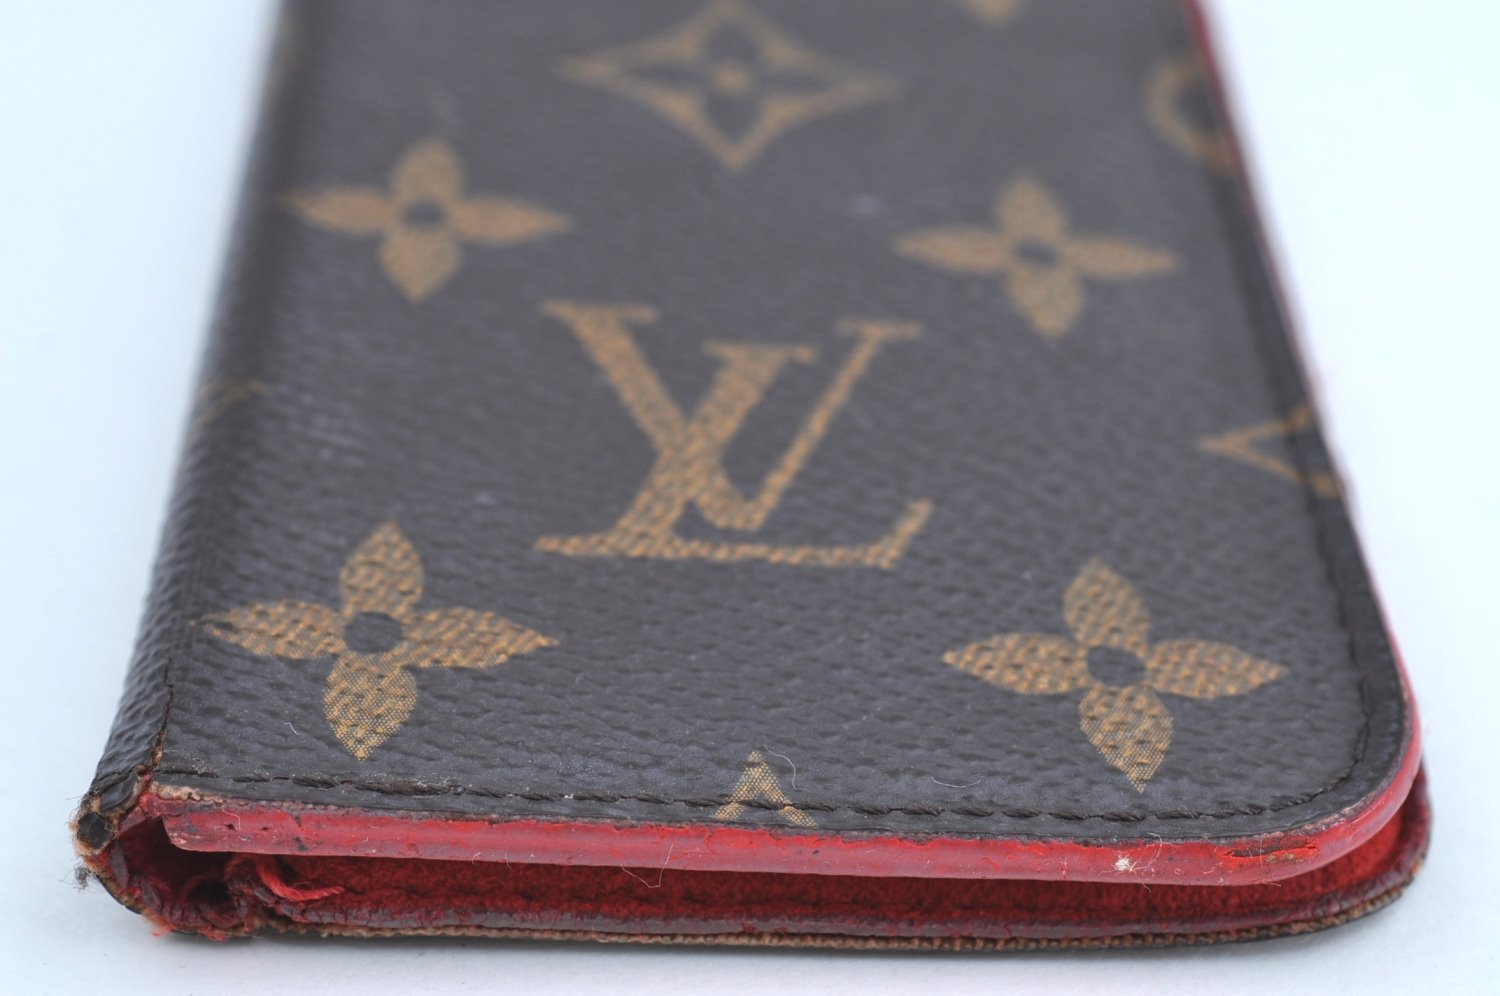 Authentic Louis Vuitton Monogram Folio Iphone 6 Case Red M61616 LV K6235